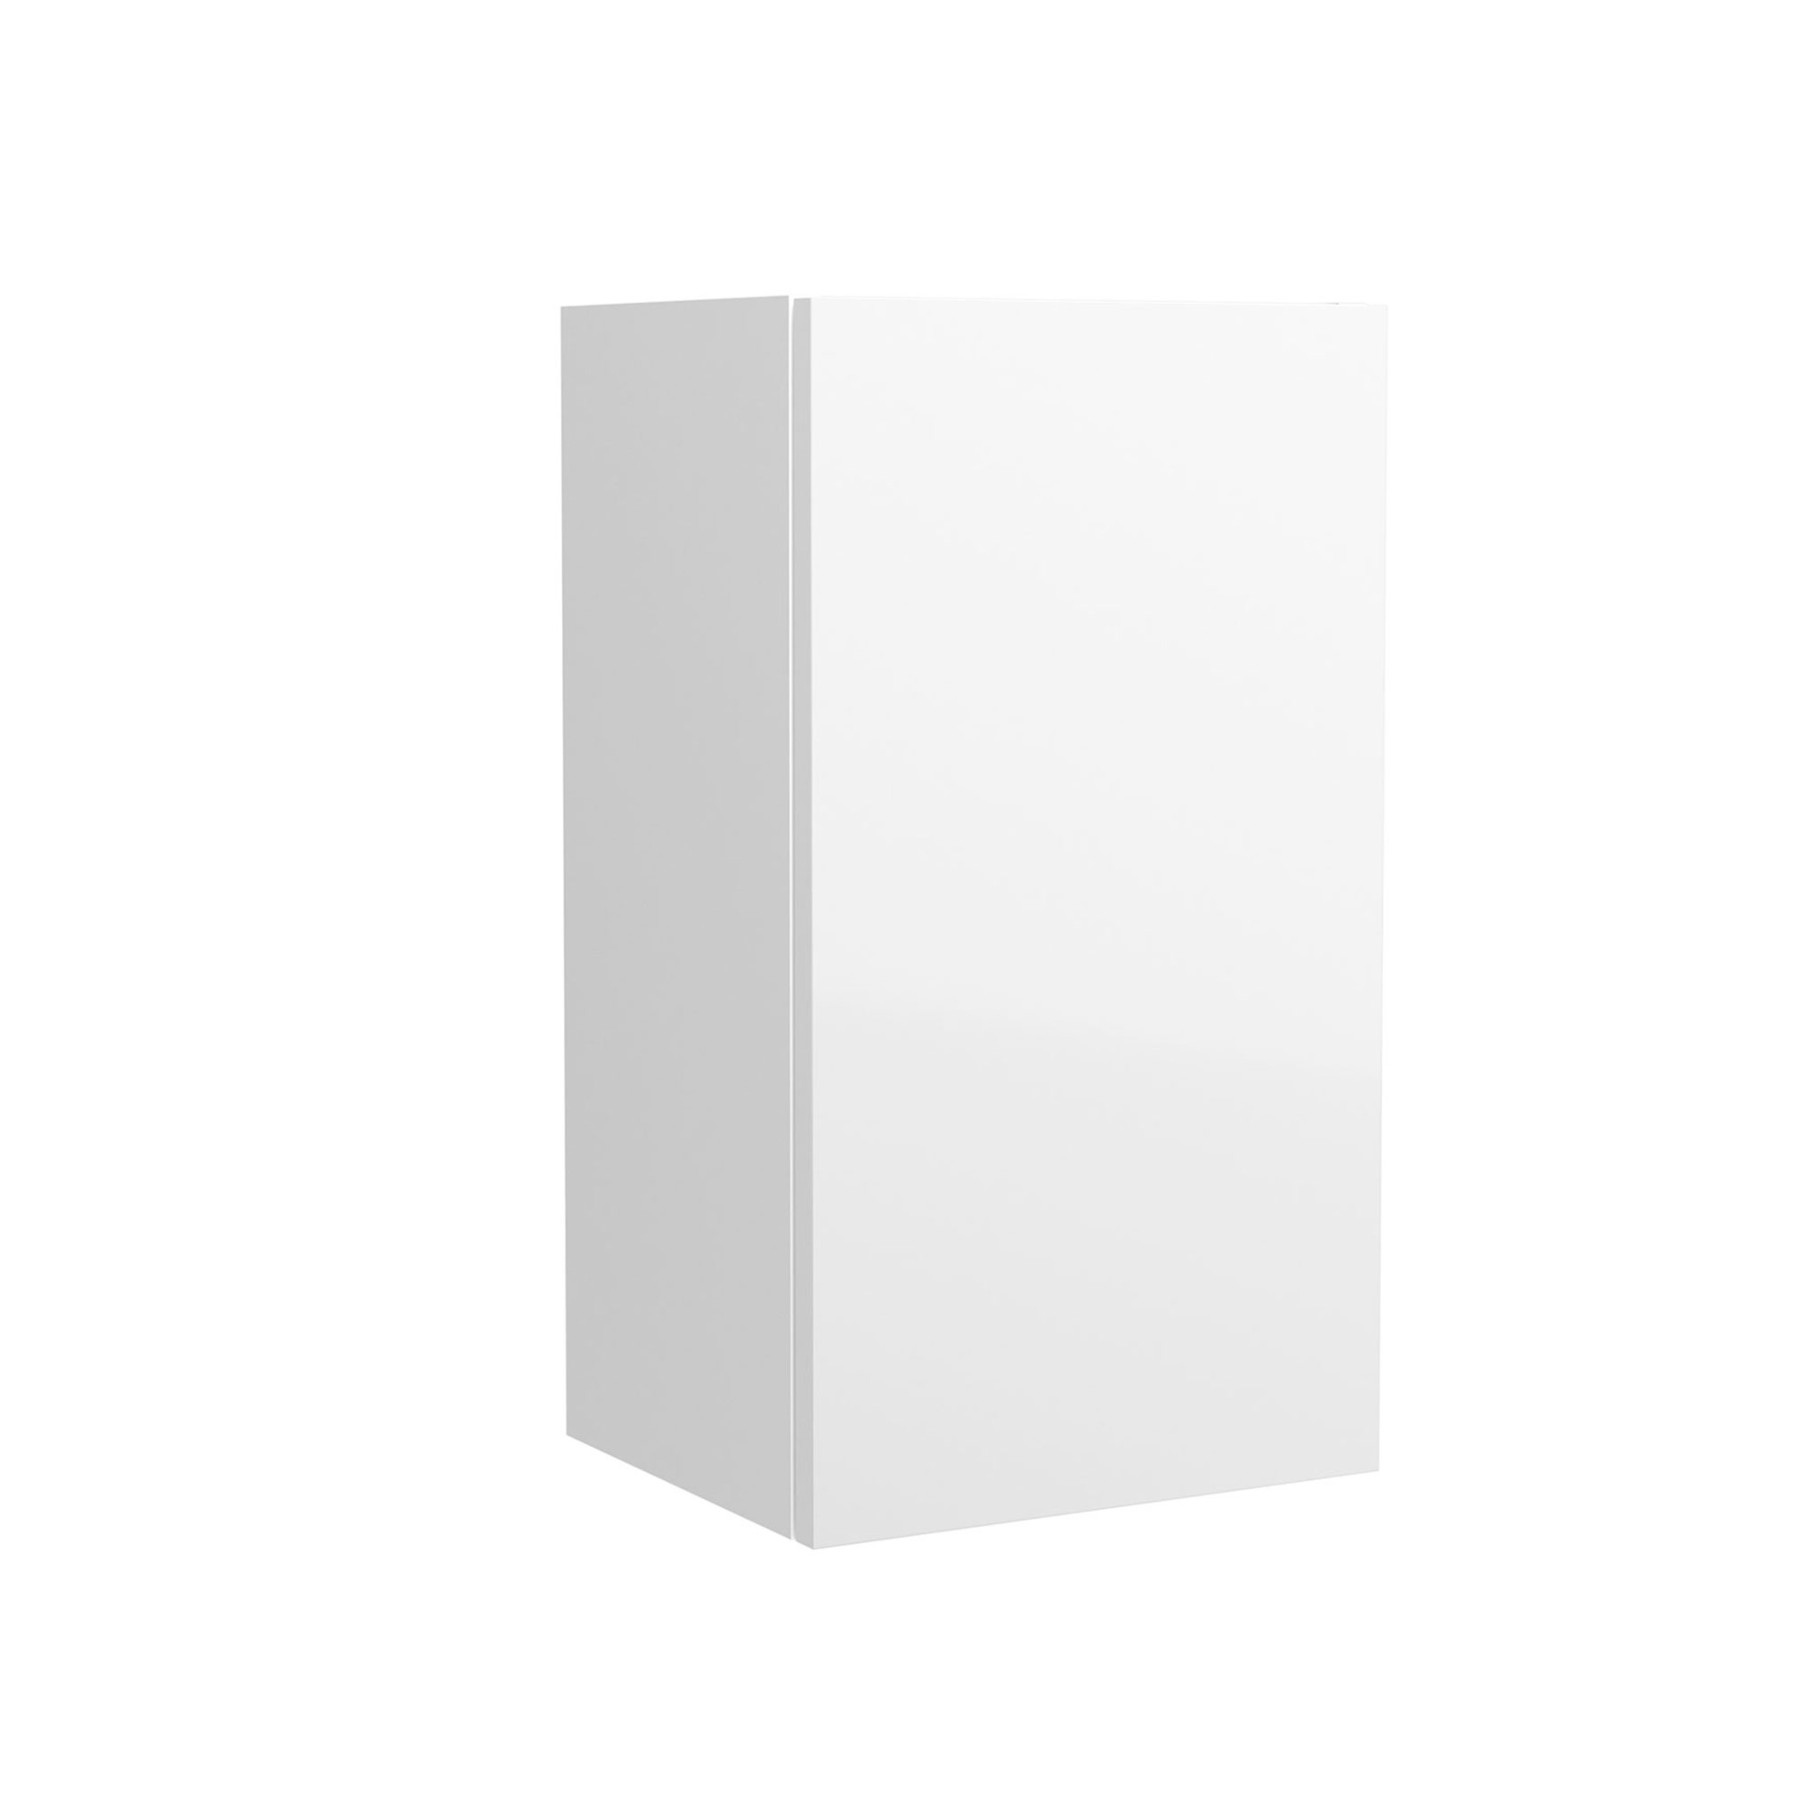 Meuble de salle de bains Gamme PRO SALGAR ALLIANCE 300 blanc brillant 1 porte fond réduit 300 x 540 x 250 mm - Réf:87512